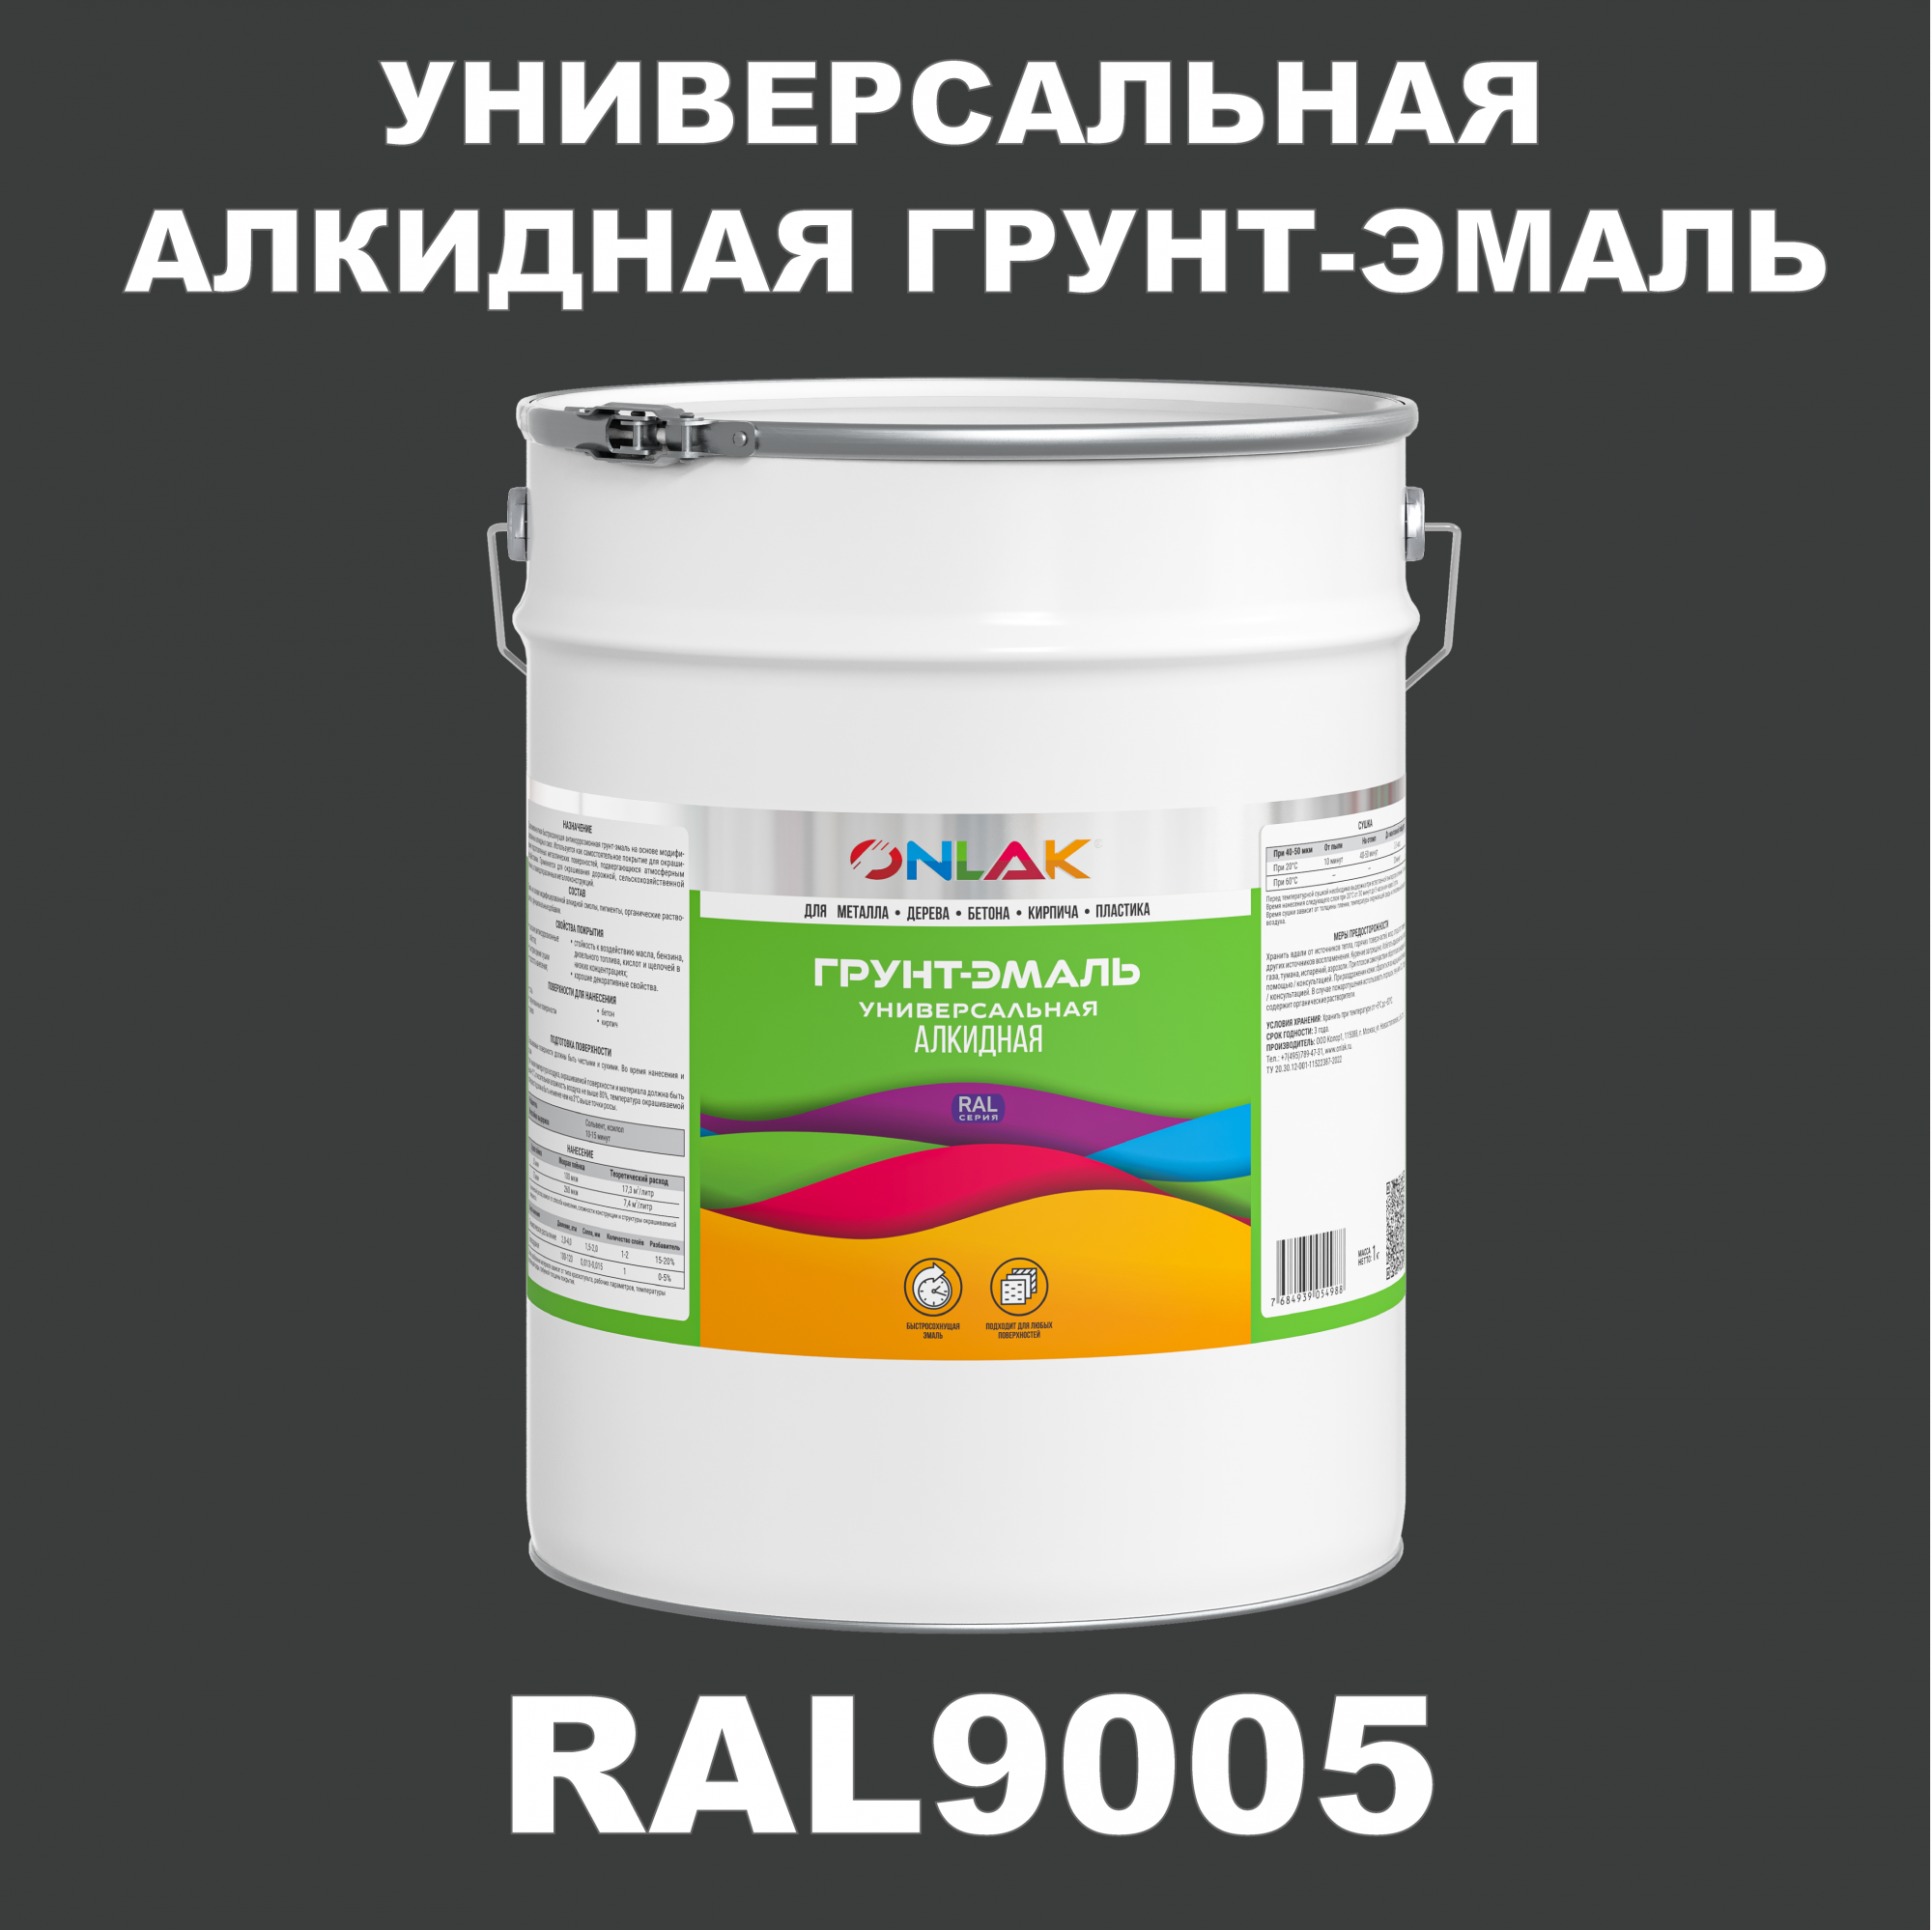 Грунт-эмаль ONLAK 1К RAL9005 антикоррозионная алкидная по металлу по ржавчине 20 кг грунт эмаль yollo по ржавчине алкидная серая 0 9 кг